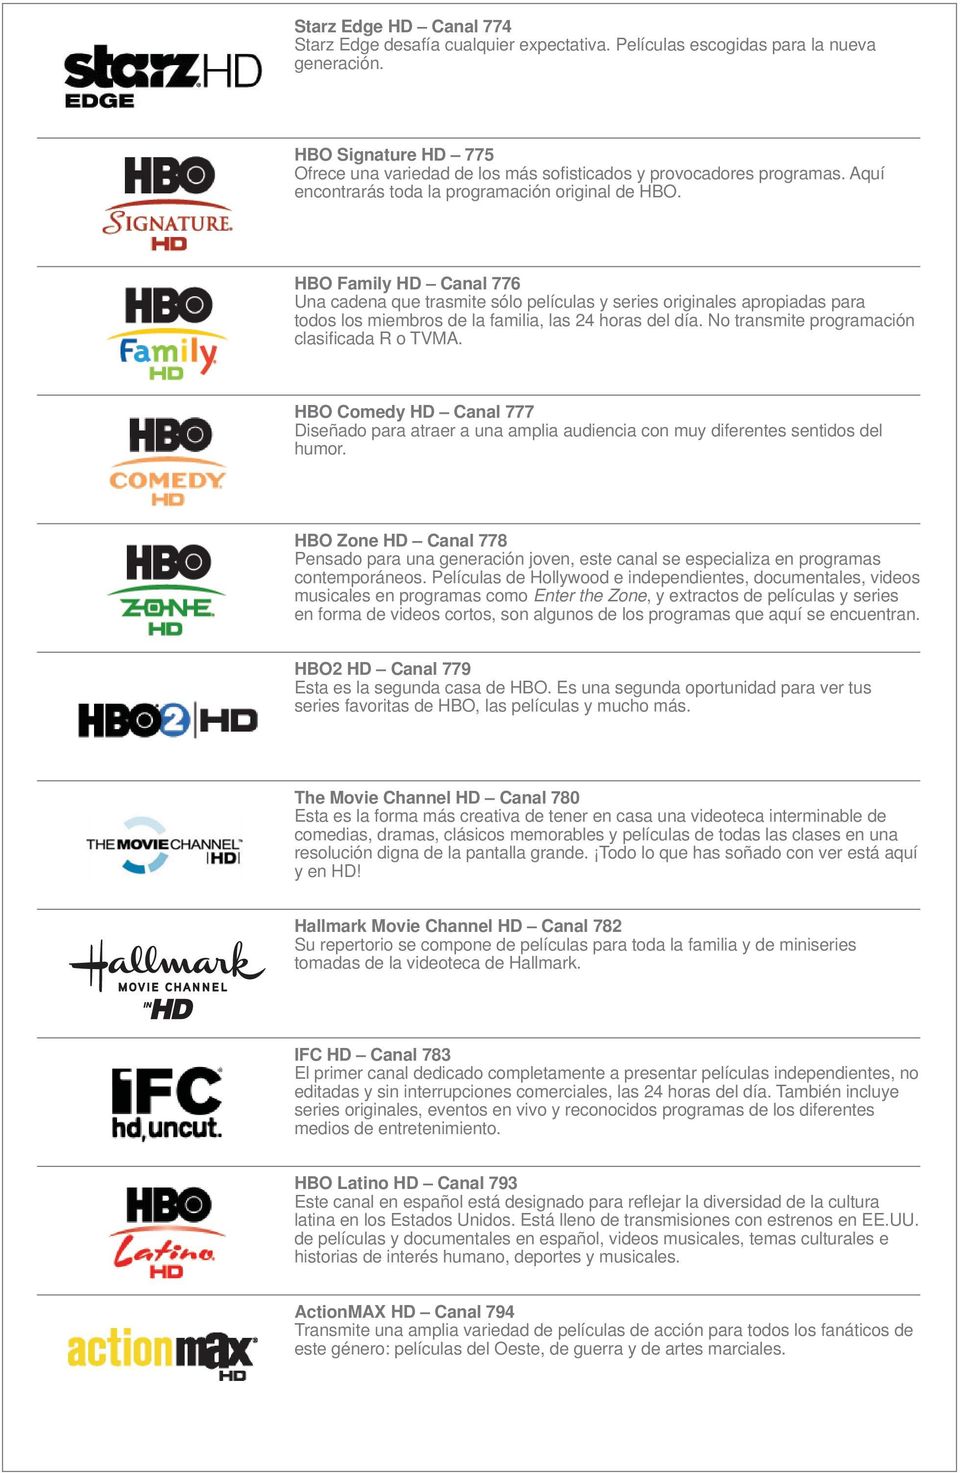 HBO Family HD Canal 776 Una cadena que trasmite sólo películas y series originales apropiadas para todos los miembros de la familia, las 24 horas del día.